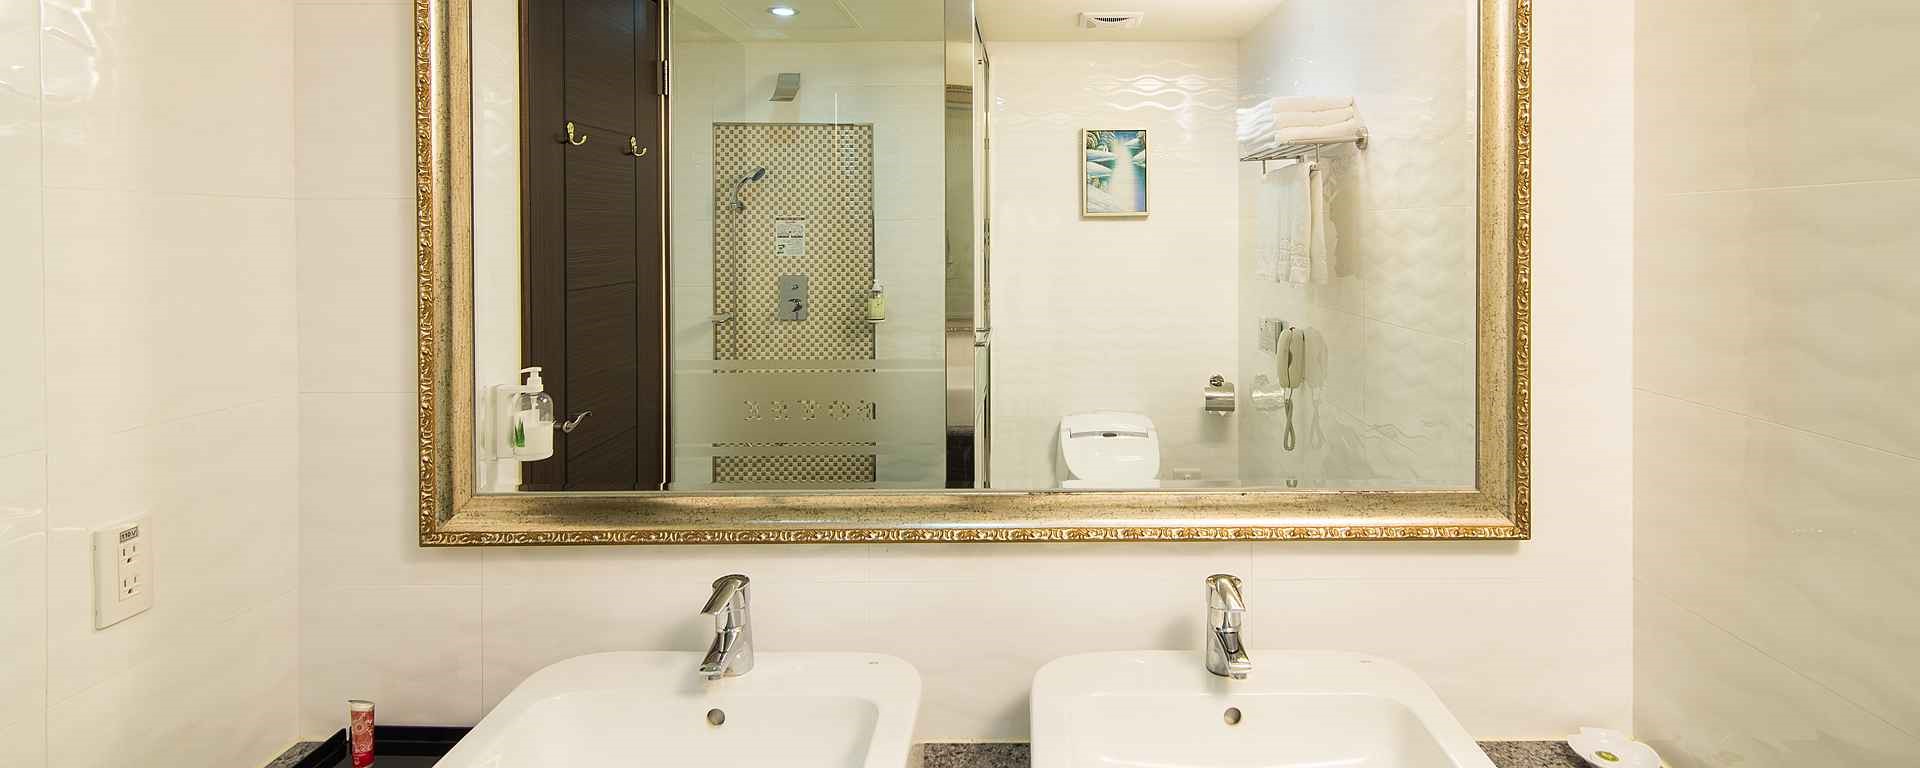 阿思瑪麗景大飯店(海景雙雅房)浴室